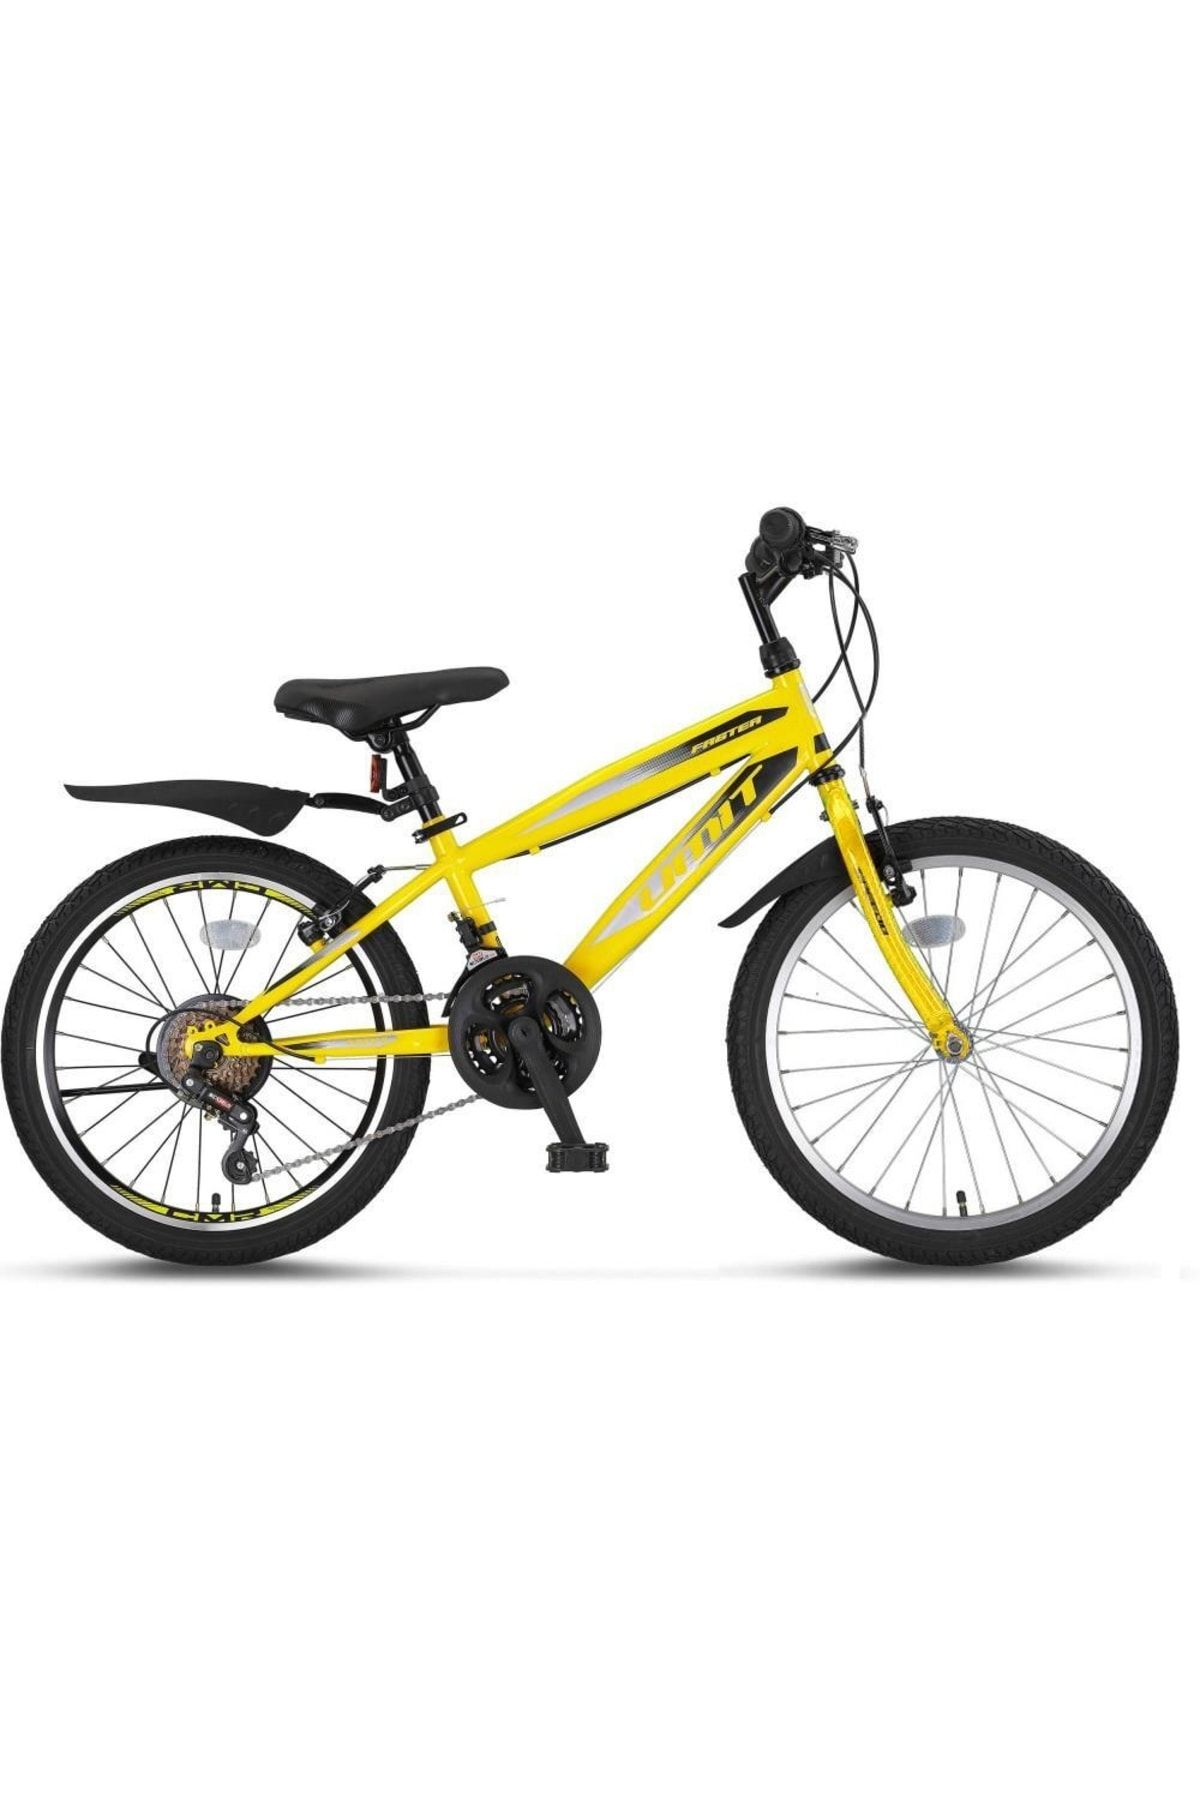 Ümit Bisiklet Ümit Speedo 20 Jant Çocuk Bisikleti Sarı-siyah